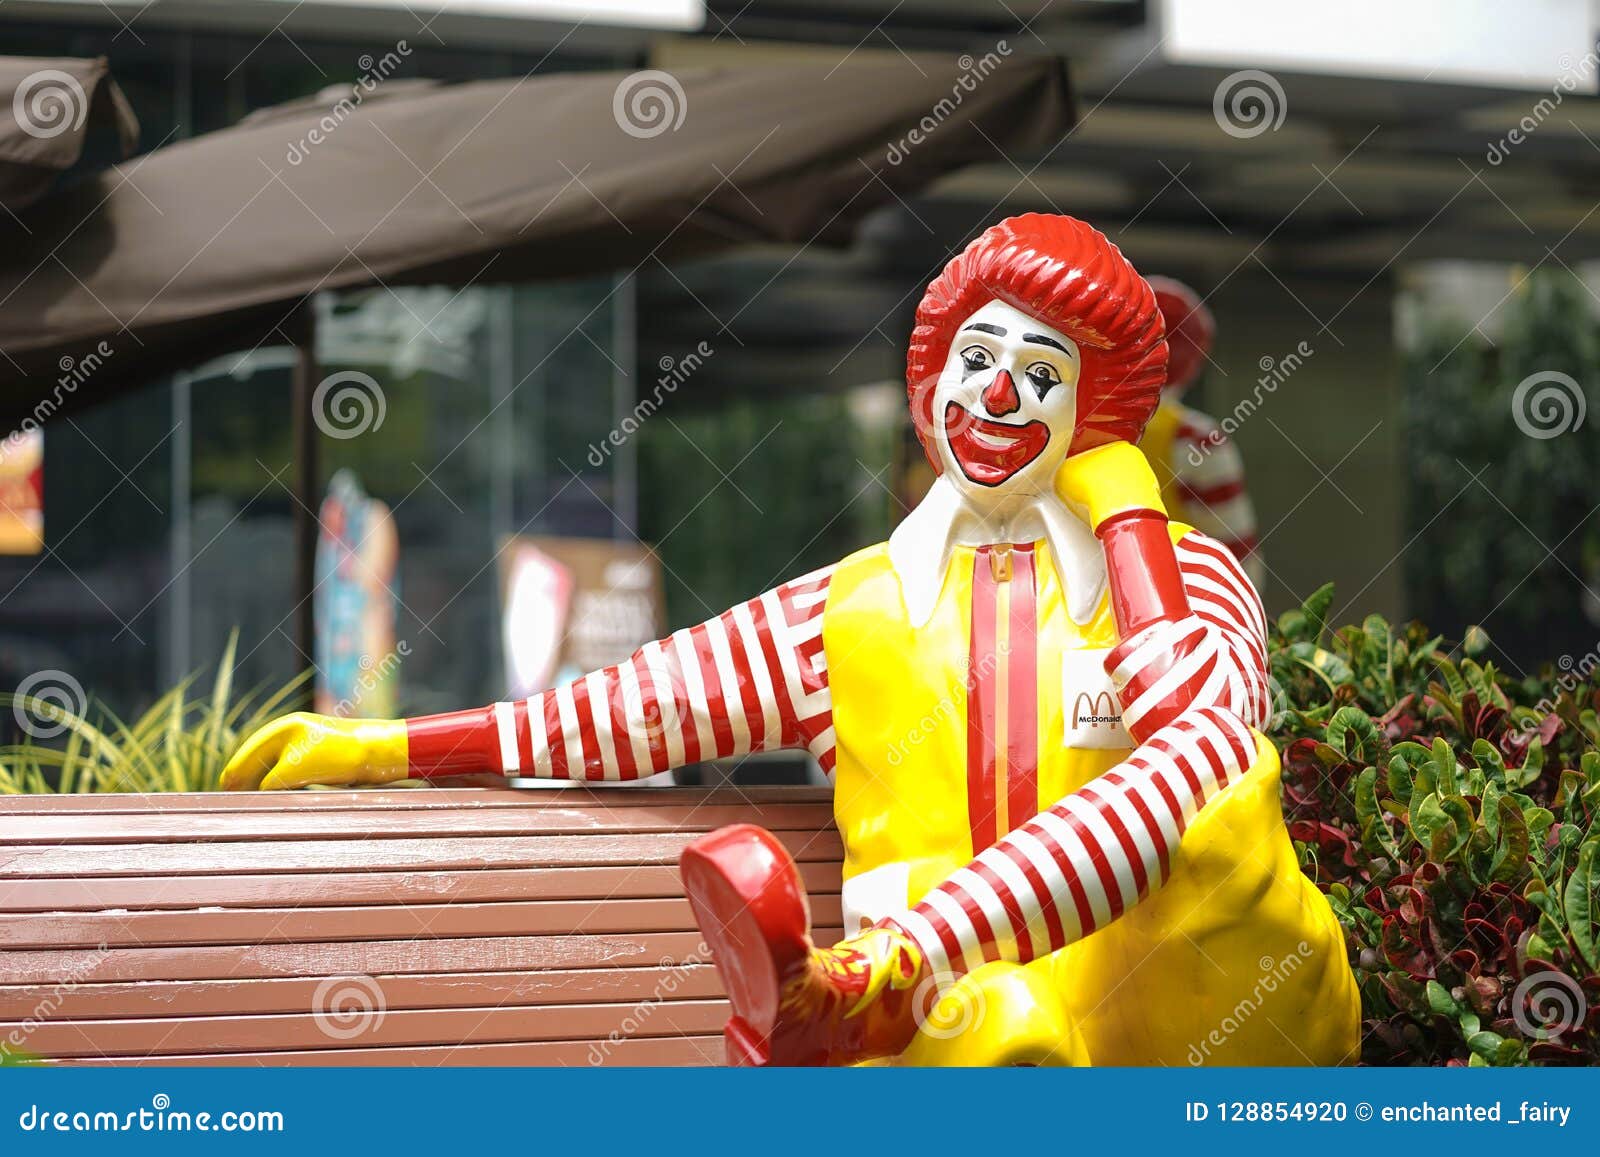 Mcdonald ronald Ronald McDonald